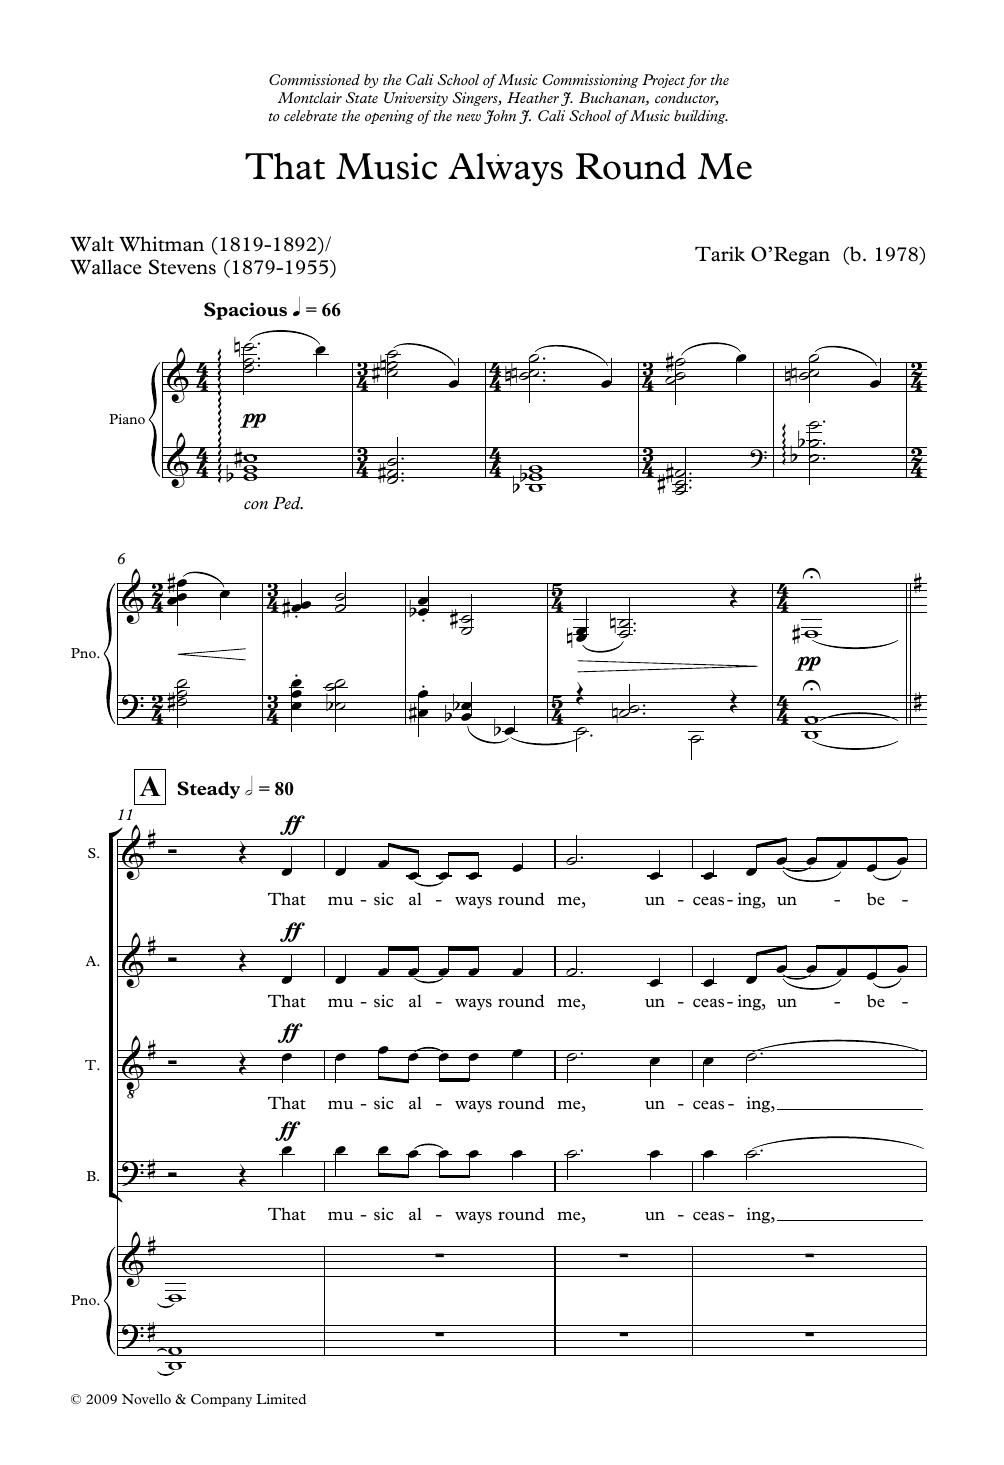 Tarik O'Regan That Music Always Round Me Sheet Music Notes & Chords for SATB Choir - Download or Print PDF